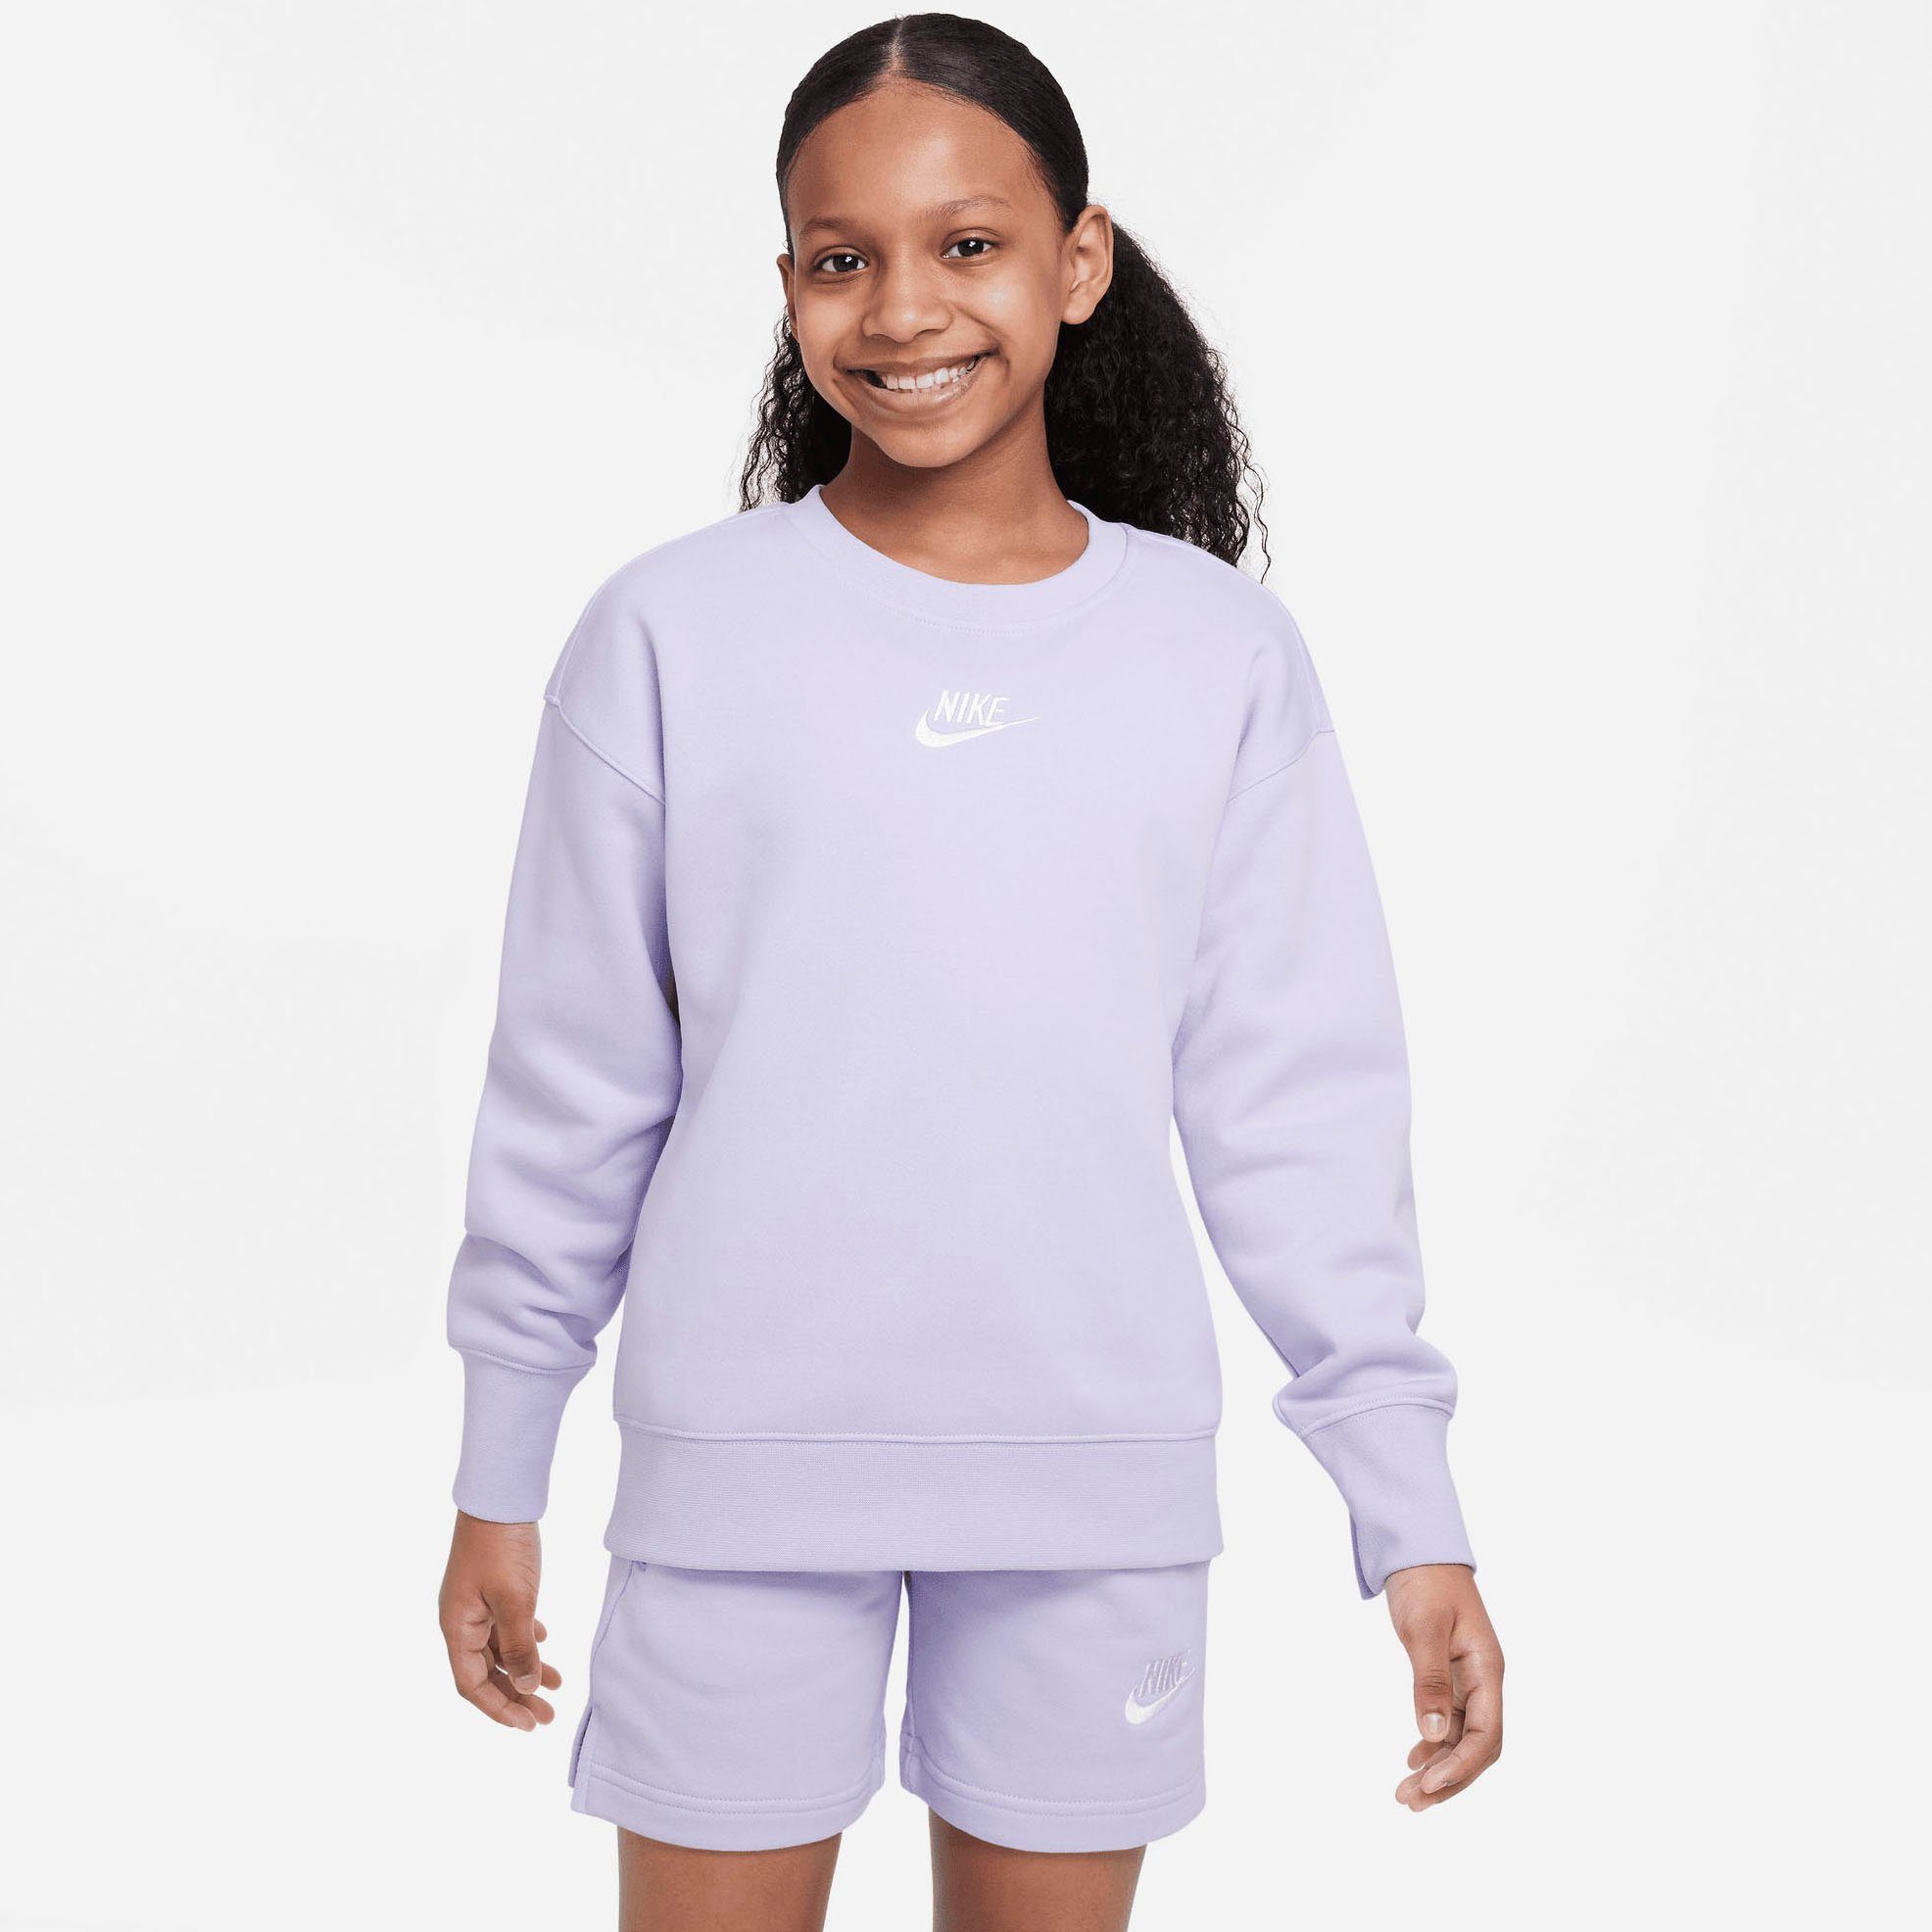 Rosa Nike Pullover für Damen online kaufen | OTTO